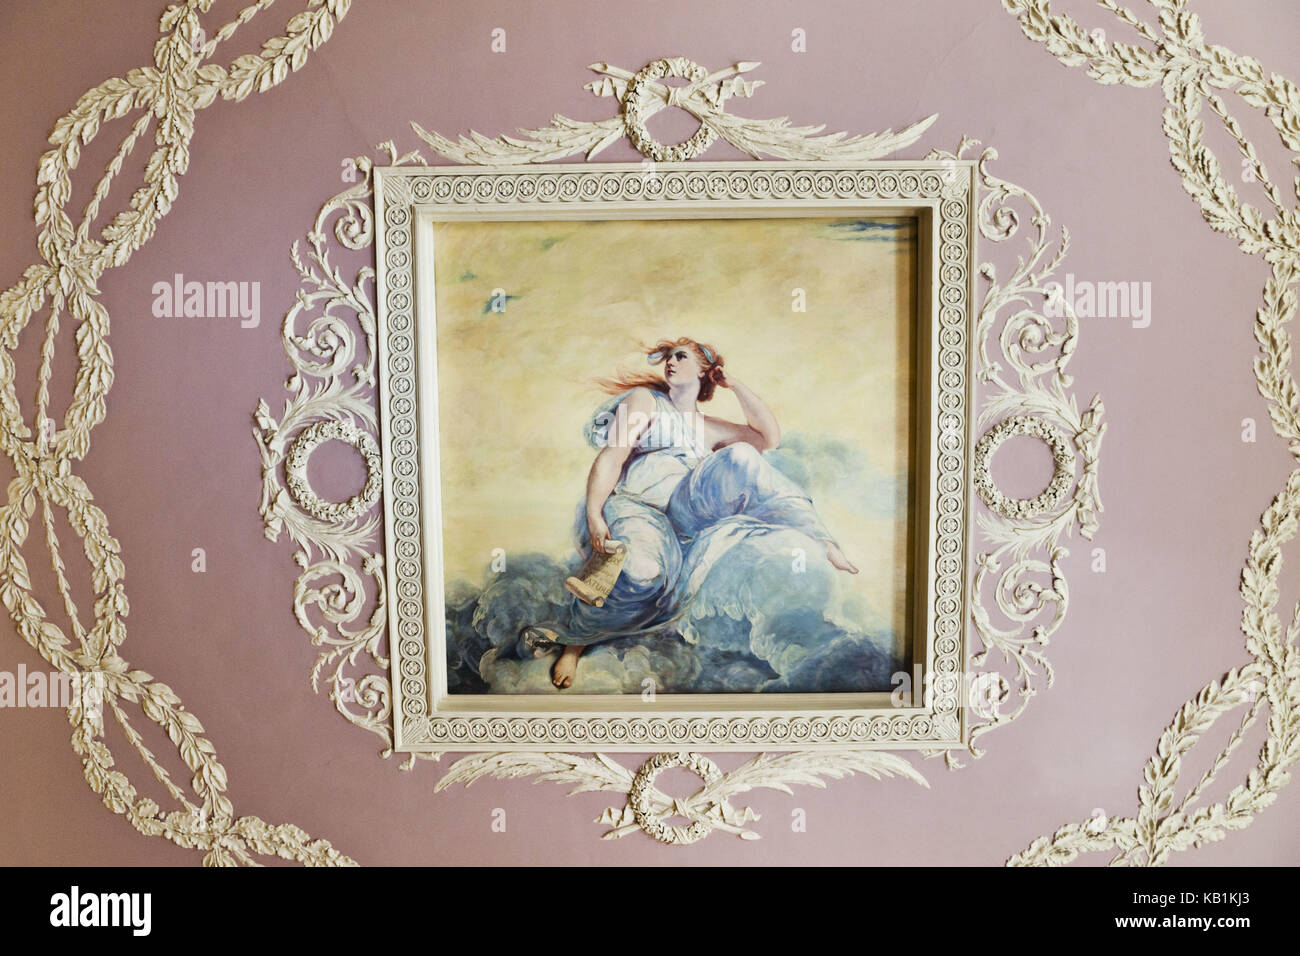 Angleterre, Londres, Aldwych, Somerset House, galerie et musée Courtauld, fresque au plafond, copie de la peinture « la théorie de l'art » de Joshua Reynolds, Banque D'Images